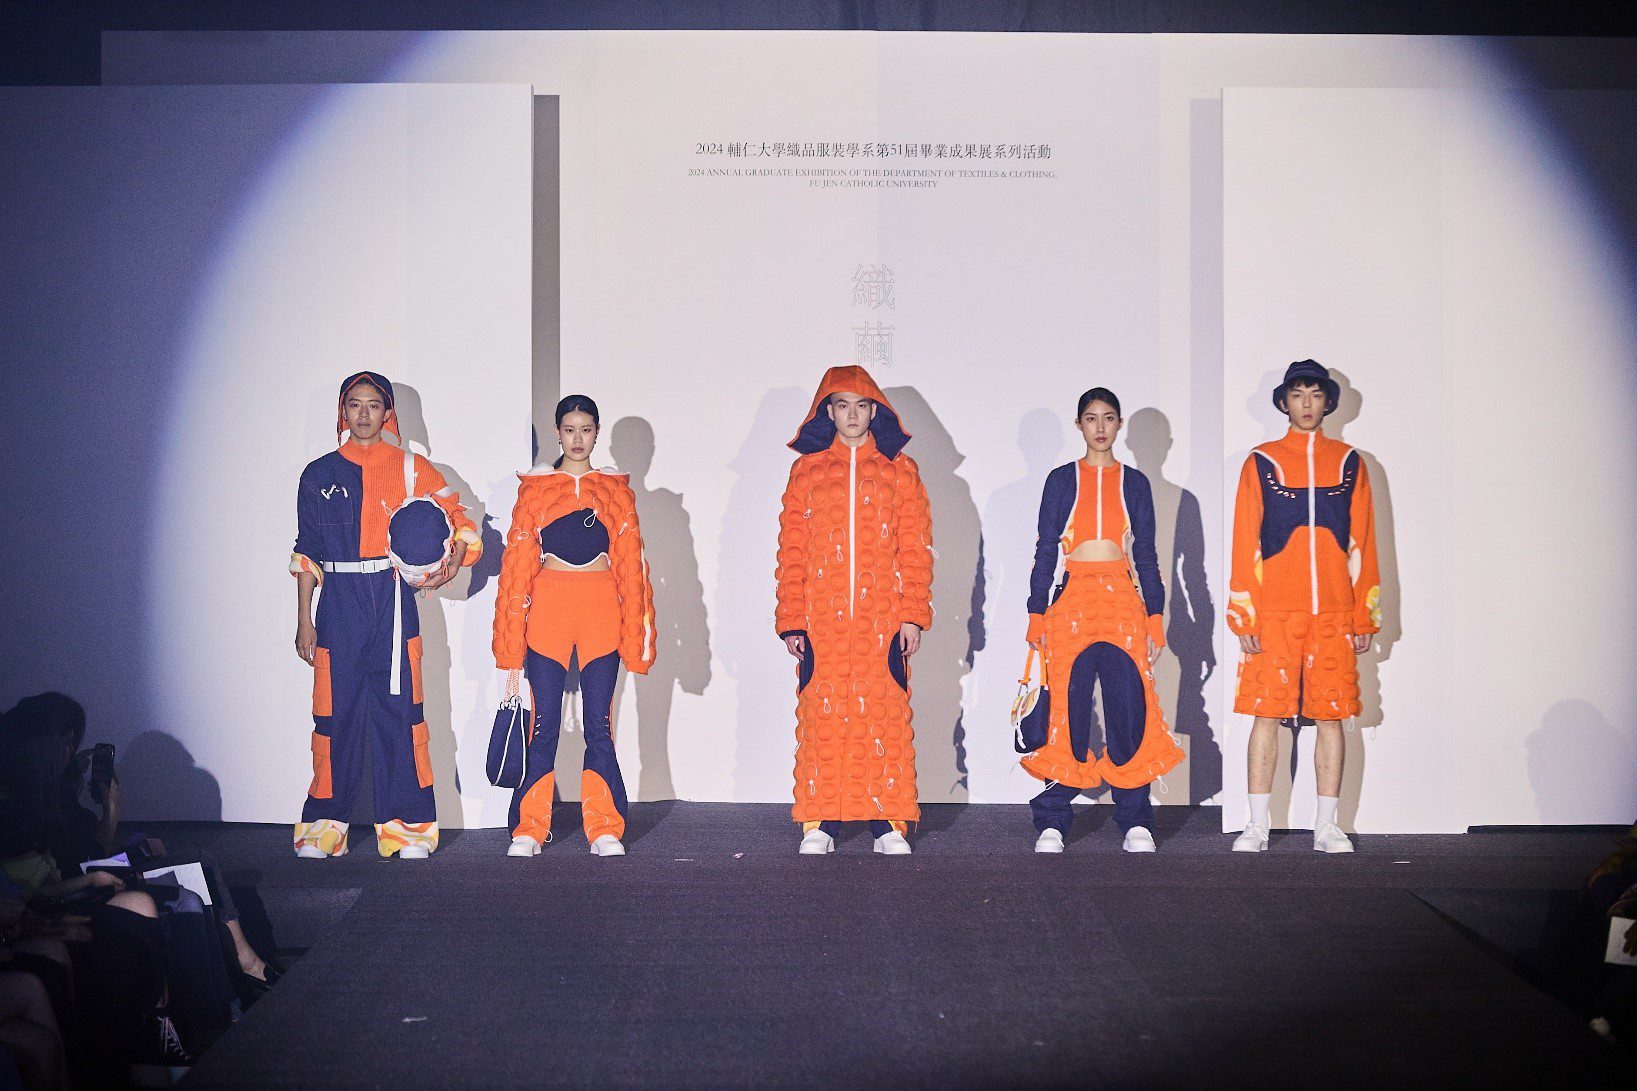 輔大織品系畢業展演「織繭」現場，學生們展現獨特風格的服裝設計。(圖/輔大織品系提供)